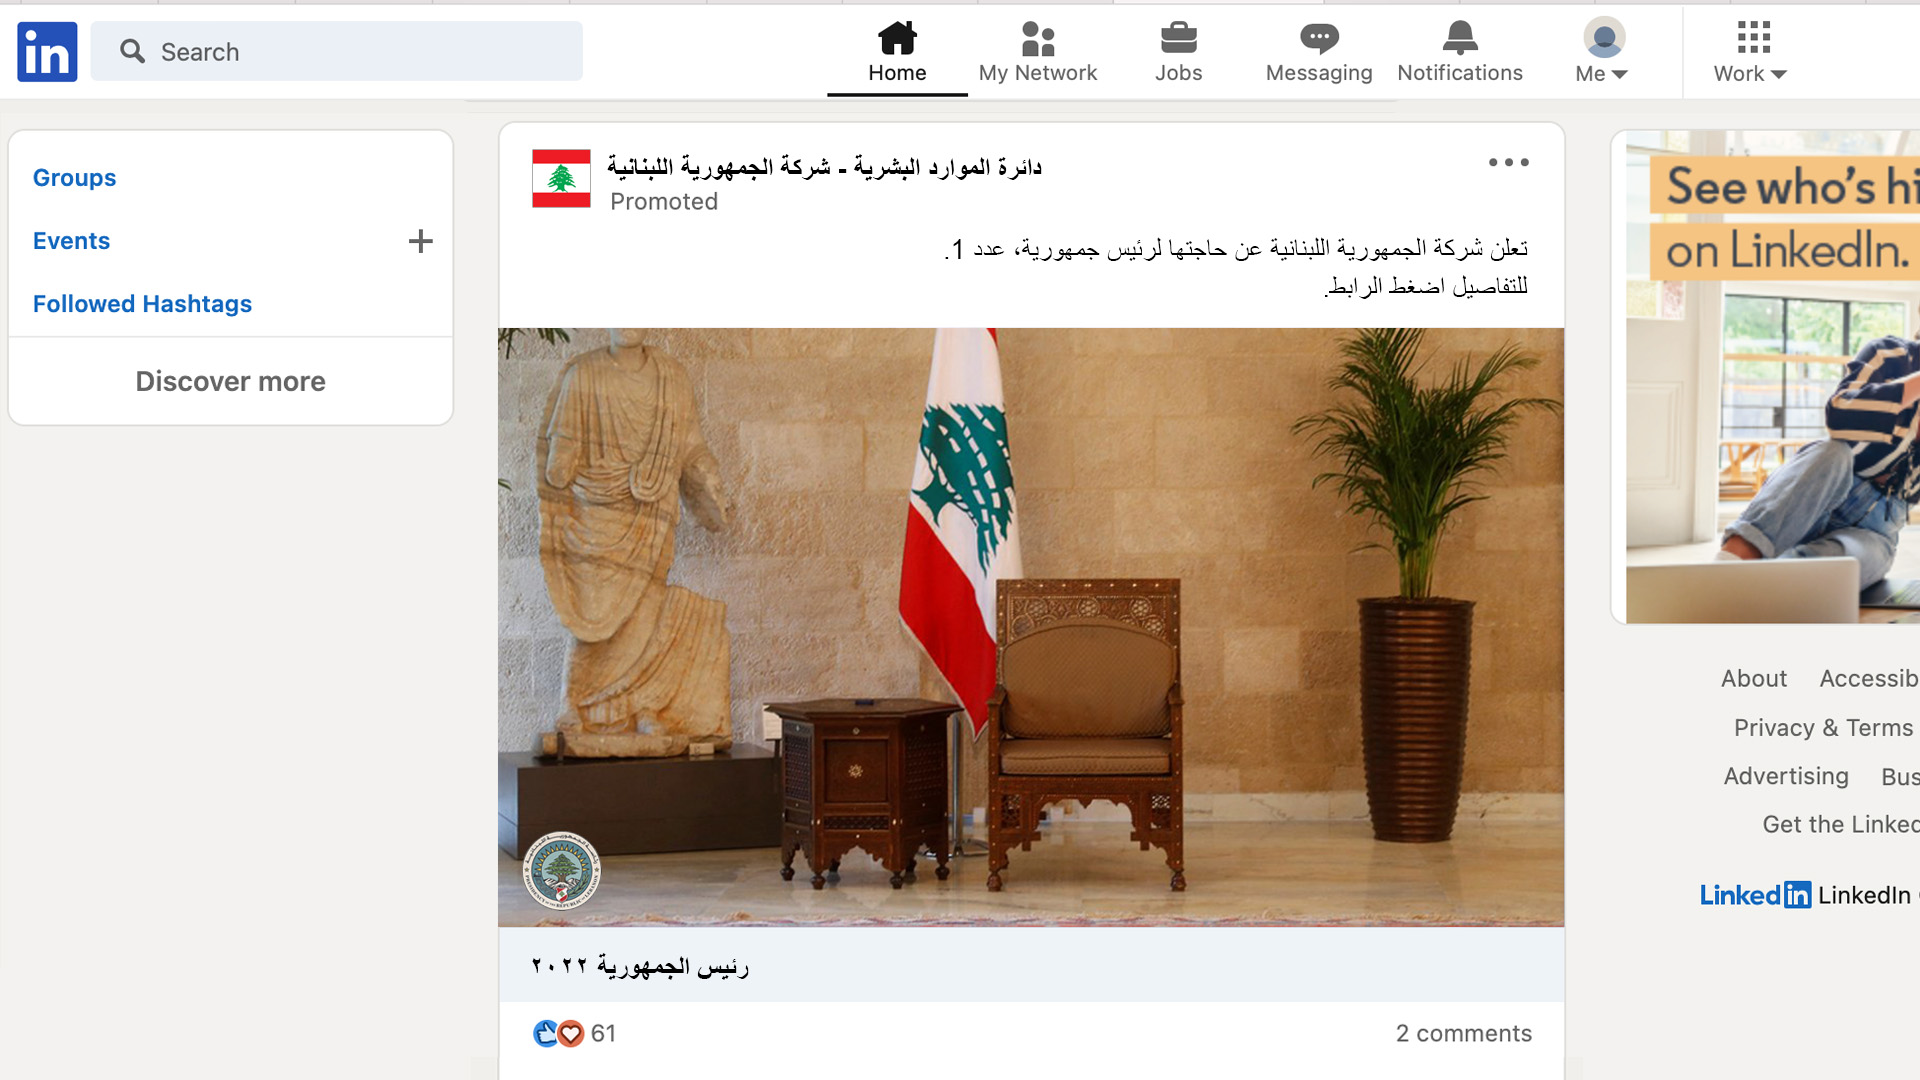 صورة لبنان يعلن عن وظيفة شاغرة لرئاسة الجمهورية على لينكد إن